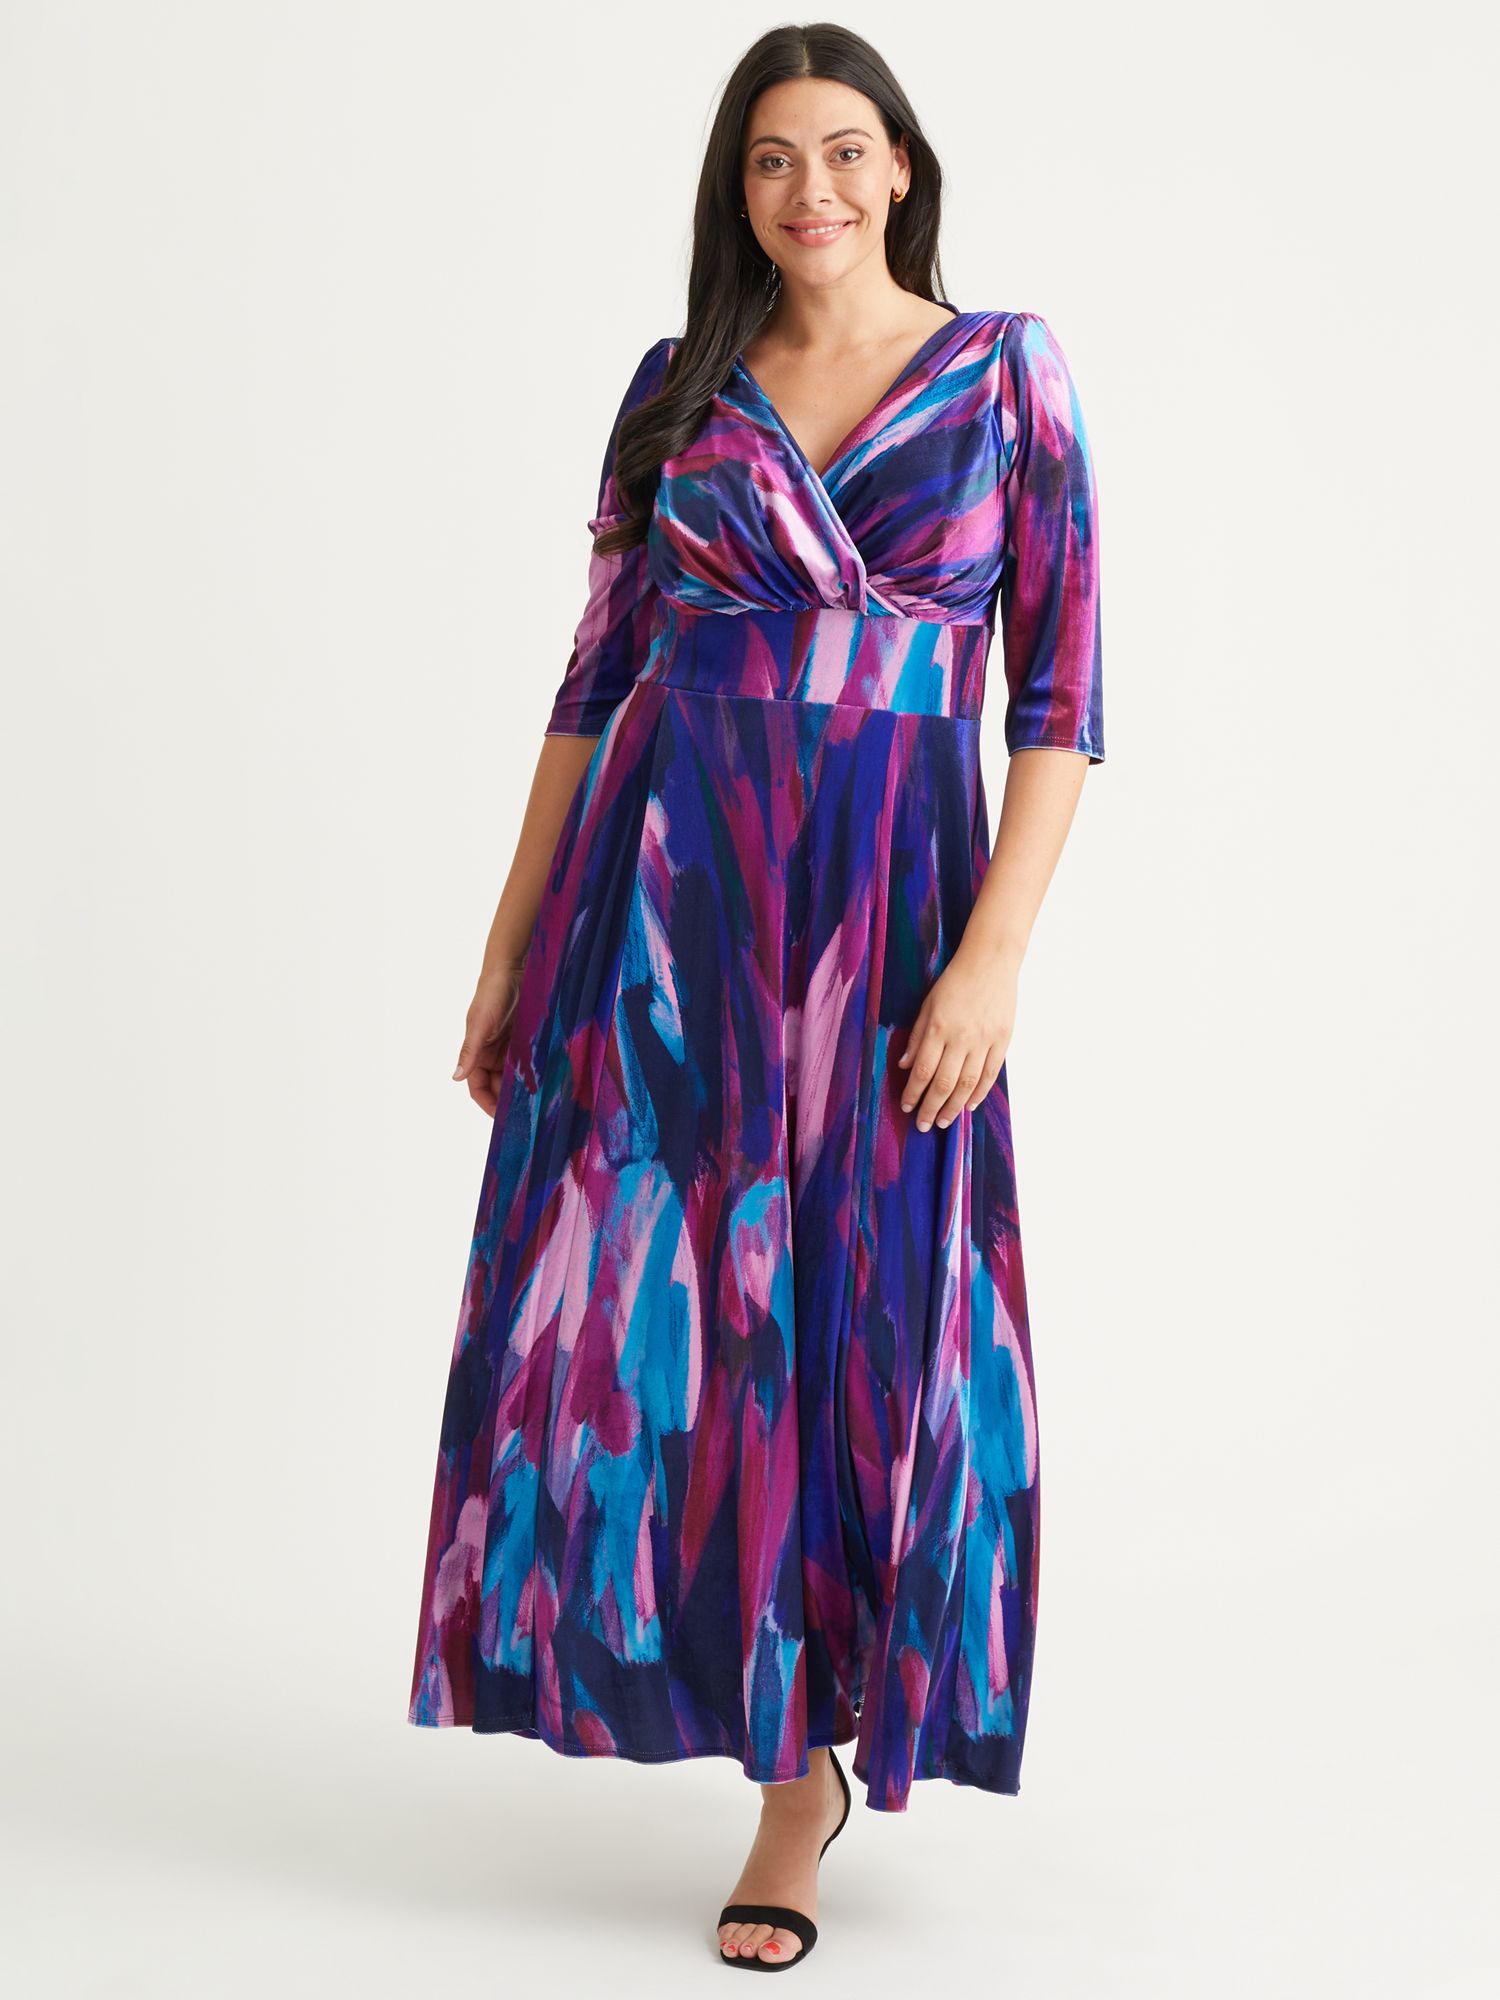 Бархатное платье макси Verity с абстрактным принтом Scarlett & Jo, индиго/пурпурный